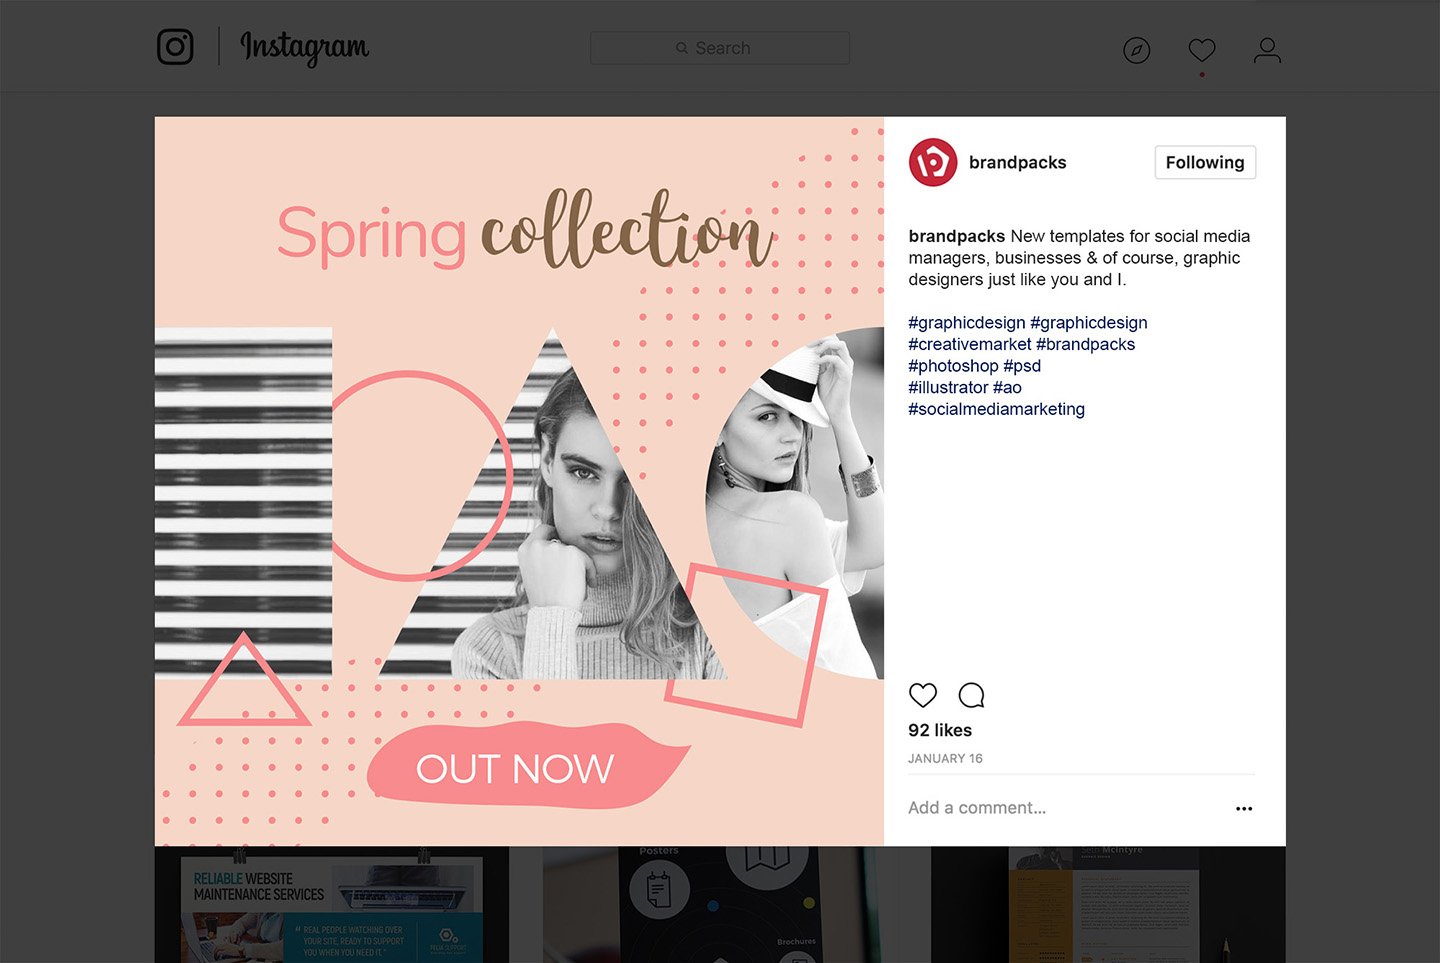 粉色系女性化妆品服装电商营销海报Instagram模板 Social Media Templates Pack Vol.5插图13